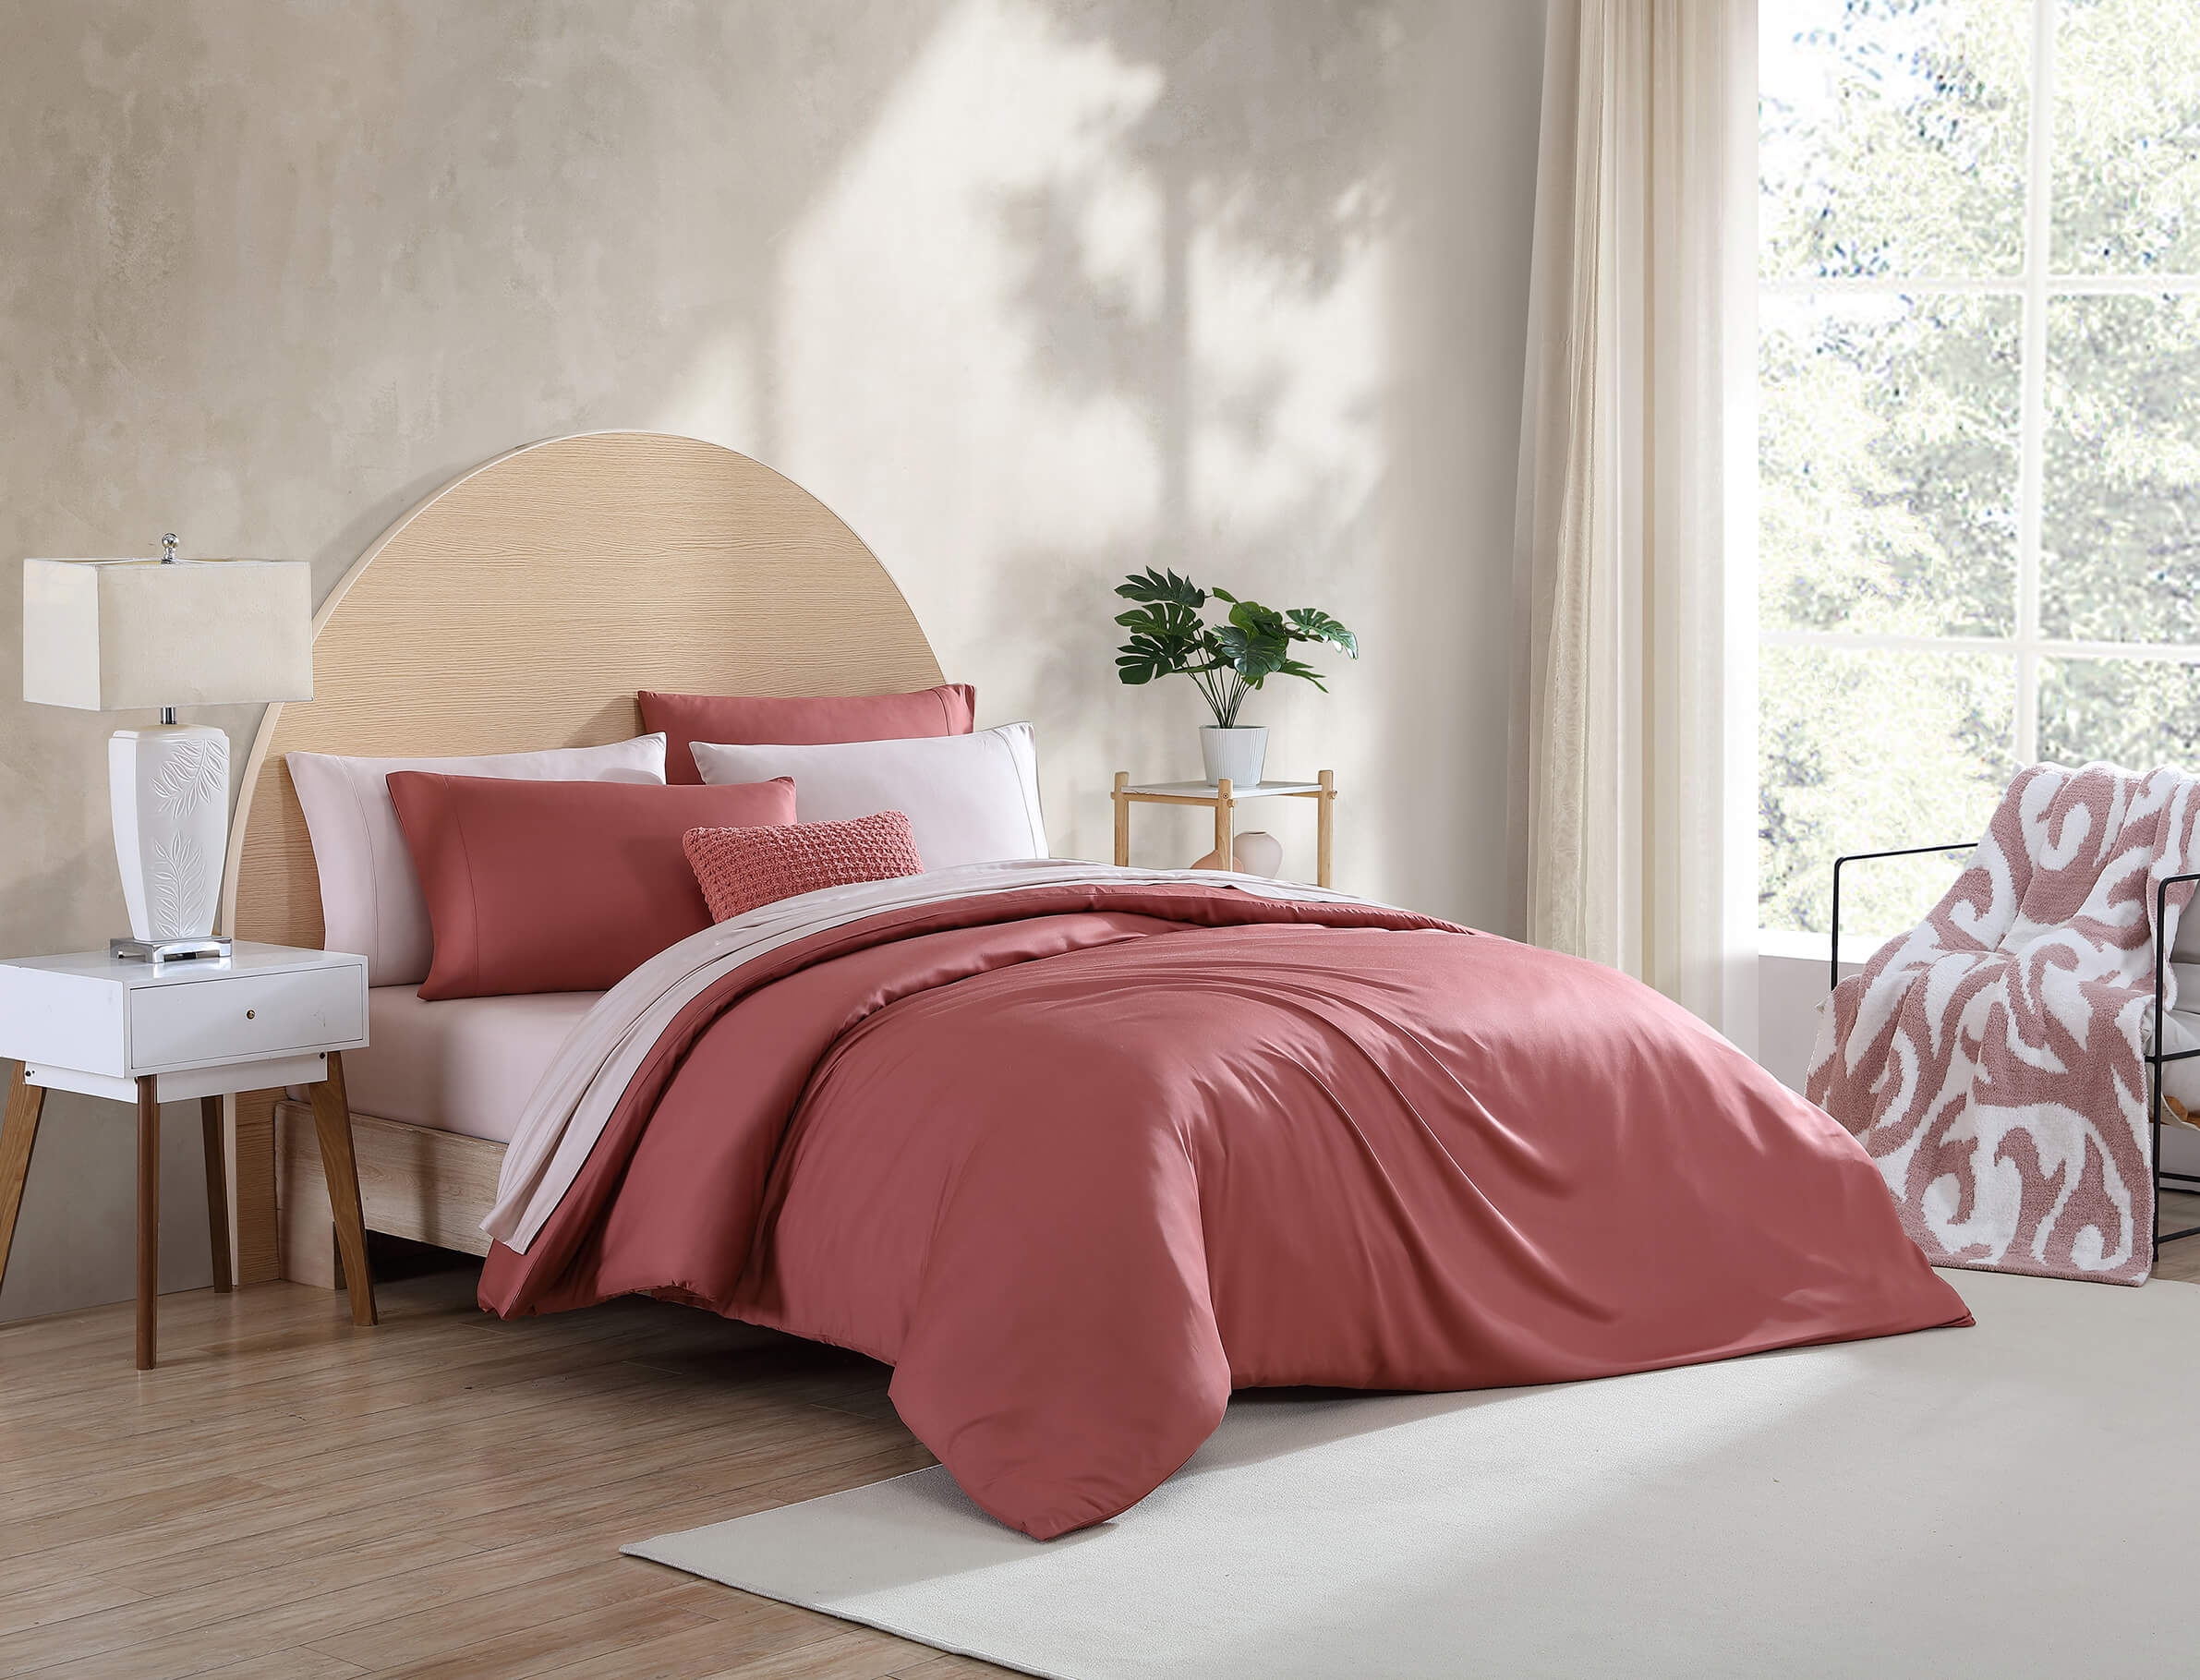 Premium Bamboo Duvet Cover. Sunday Citizen Duvet Cover. Bamboo Duvet. Clay Duvet Cover. Pink Red Bedding. Clay duvet cover bedding inspo. Simple modern boho bedroom.